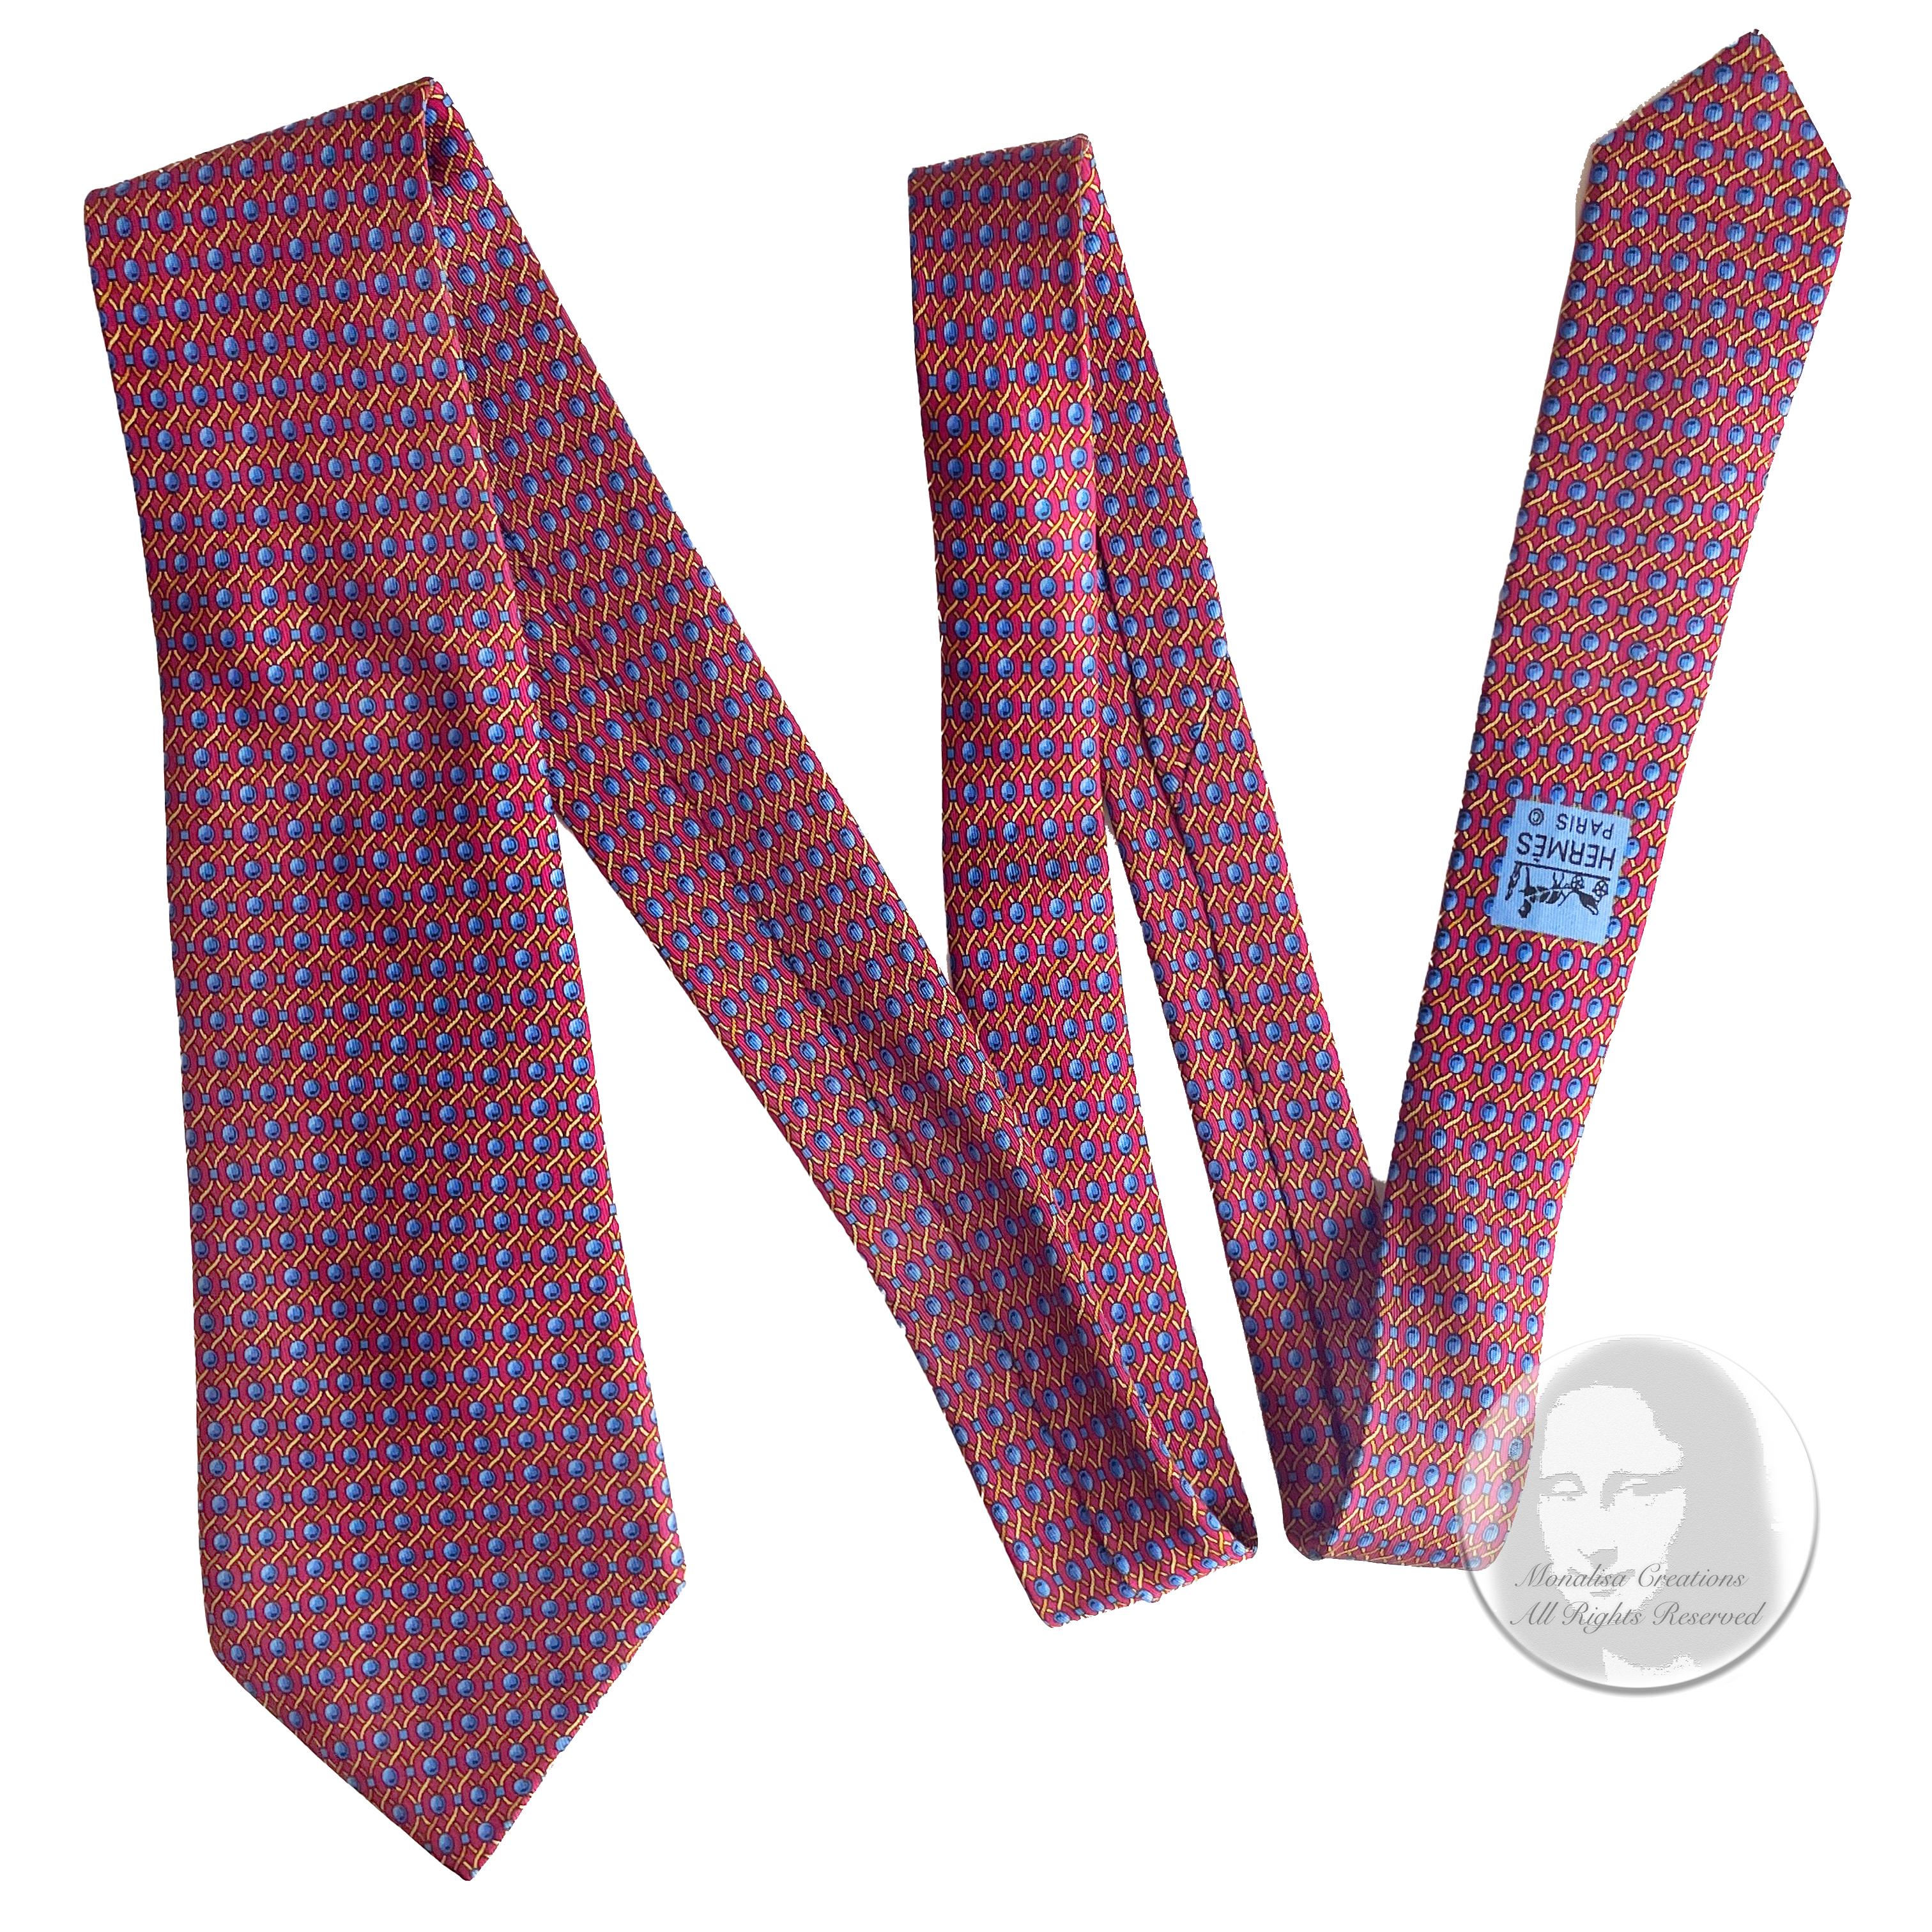 Cravate Hermès en soie imprimée corde abstraite 7242 MA 1990 2